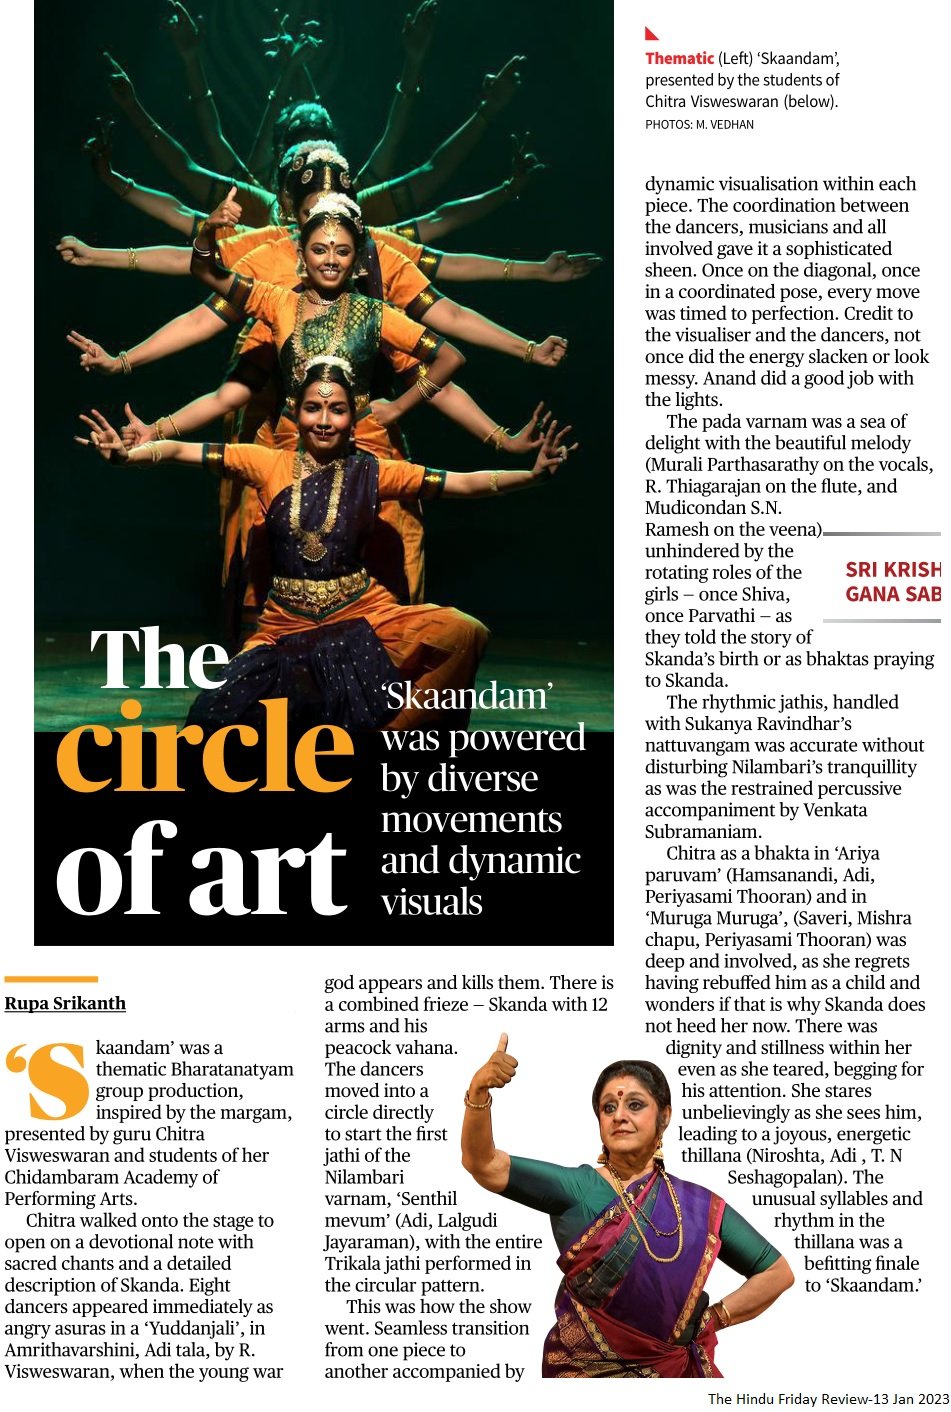 The circle of art - Rupa Srikanth